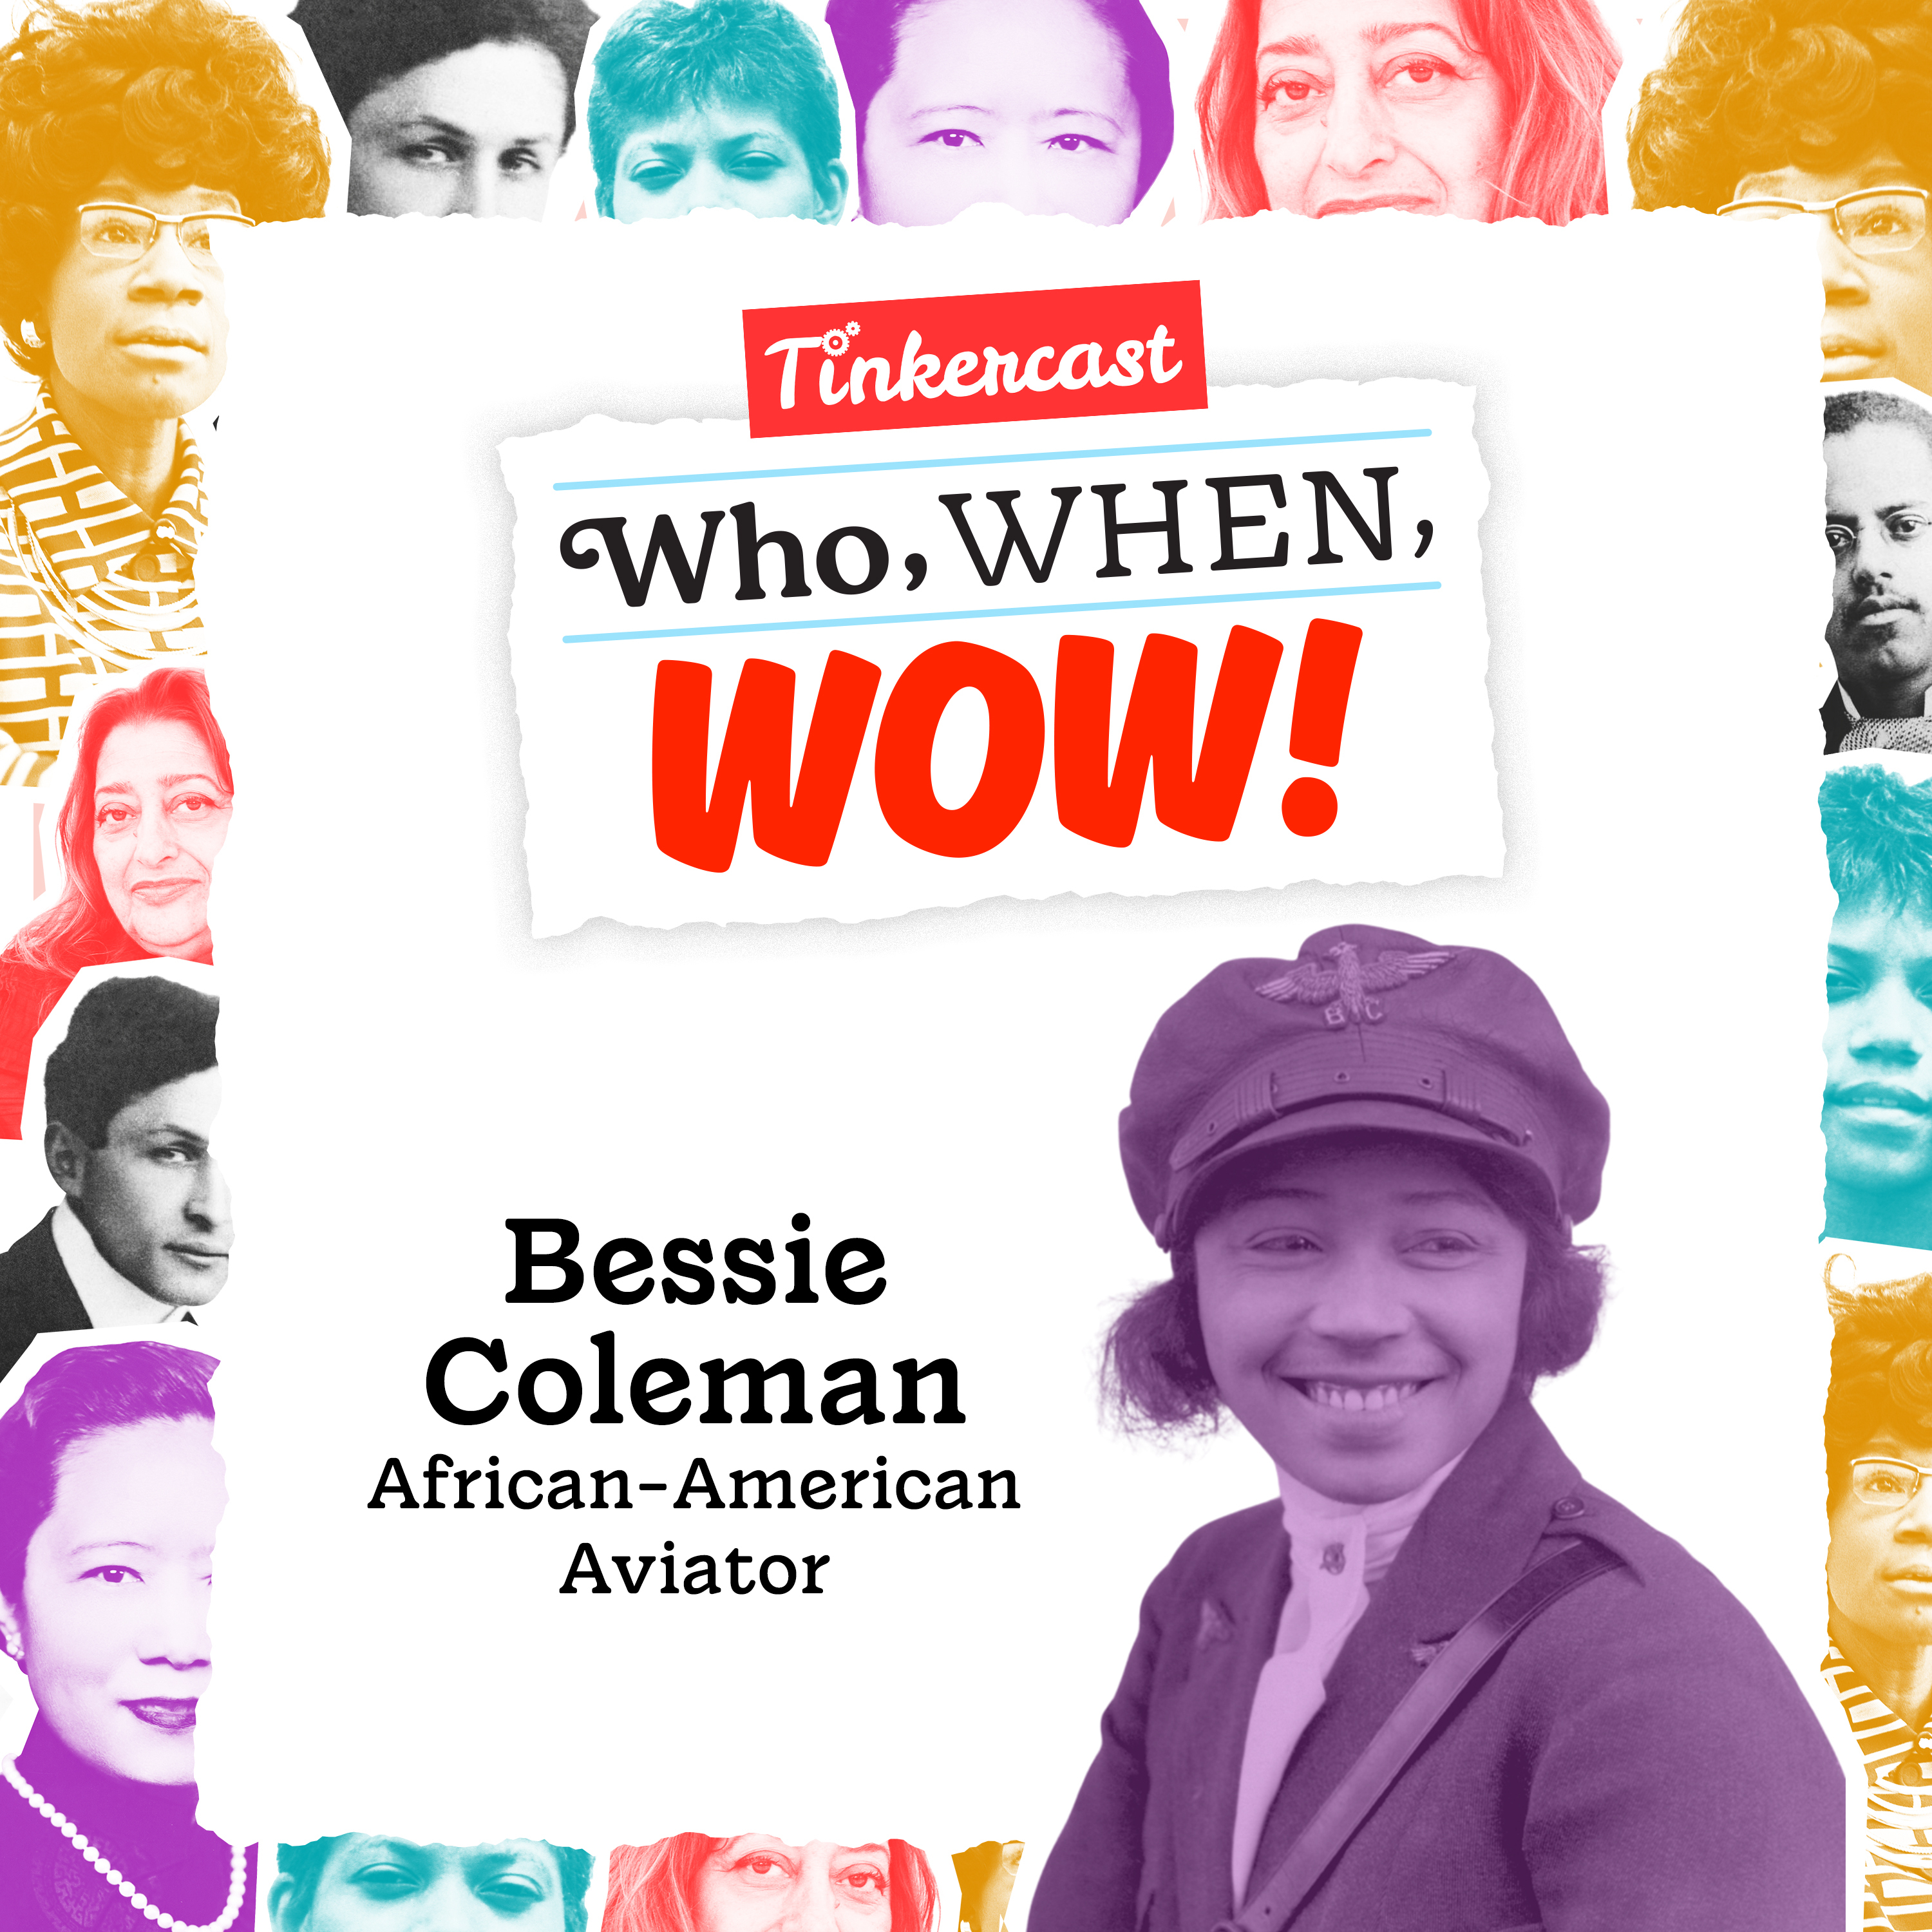 Bessie Coleman: Pilot